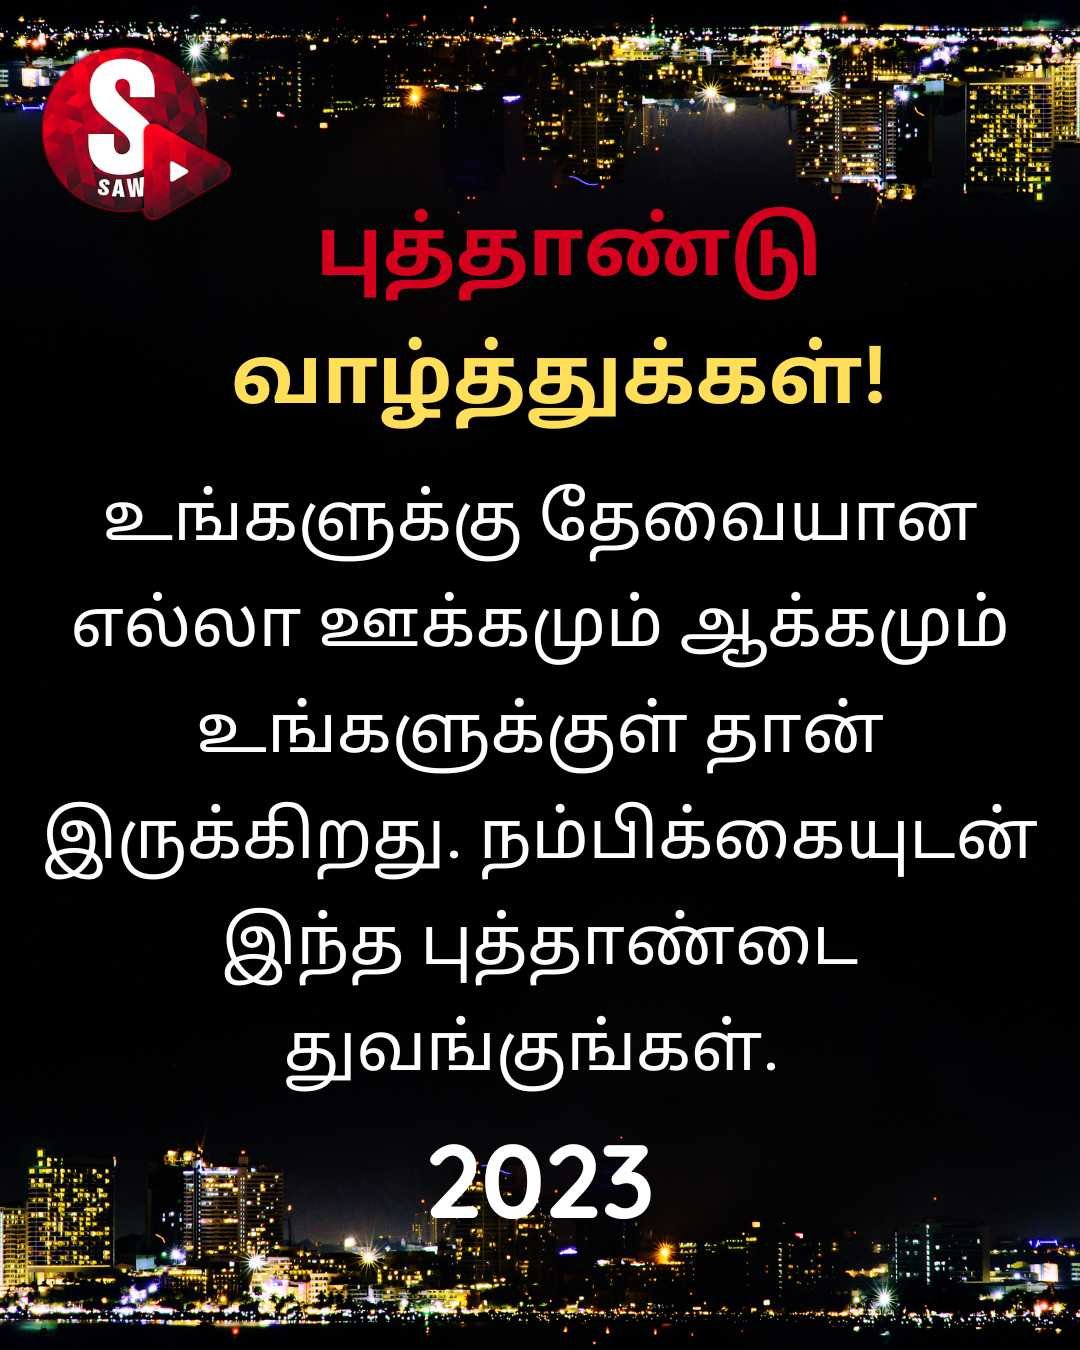 New Year Wishes in Tamil | அனைவருக்கும் ஆனந்தமான புத்தாண்டு வாழ்த்துக்கள்! 